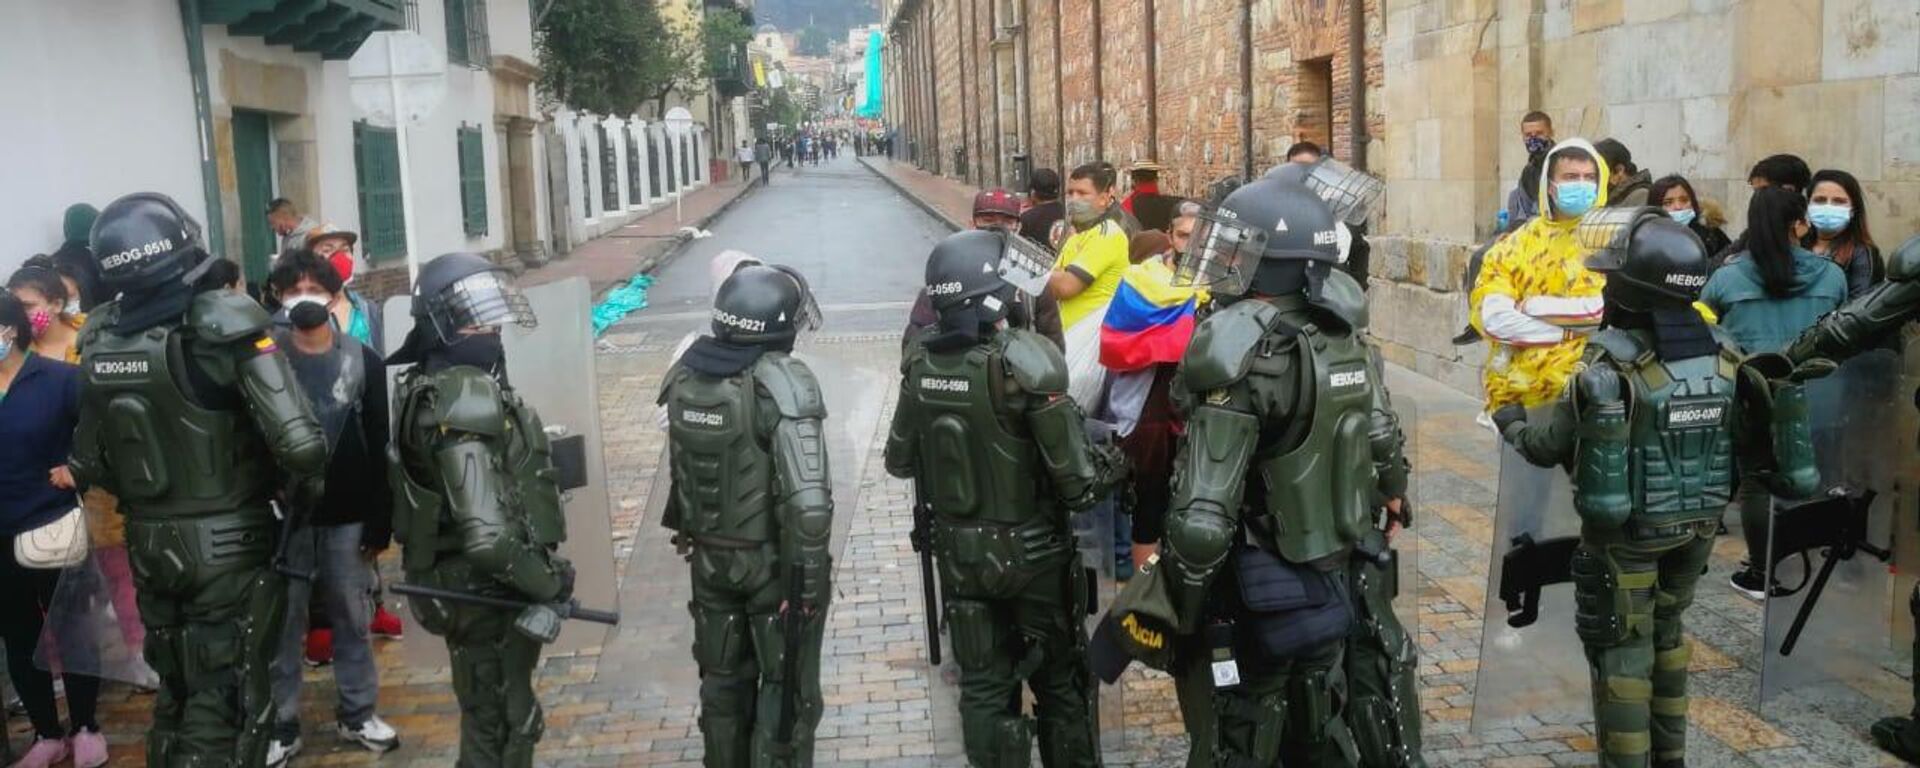 La Policía colombiana se desplegó en la jornada de protestas - Sputnik Mundo, 1920, 16.07.2021